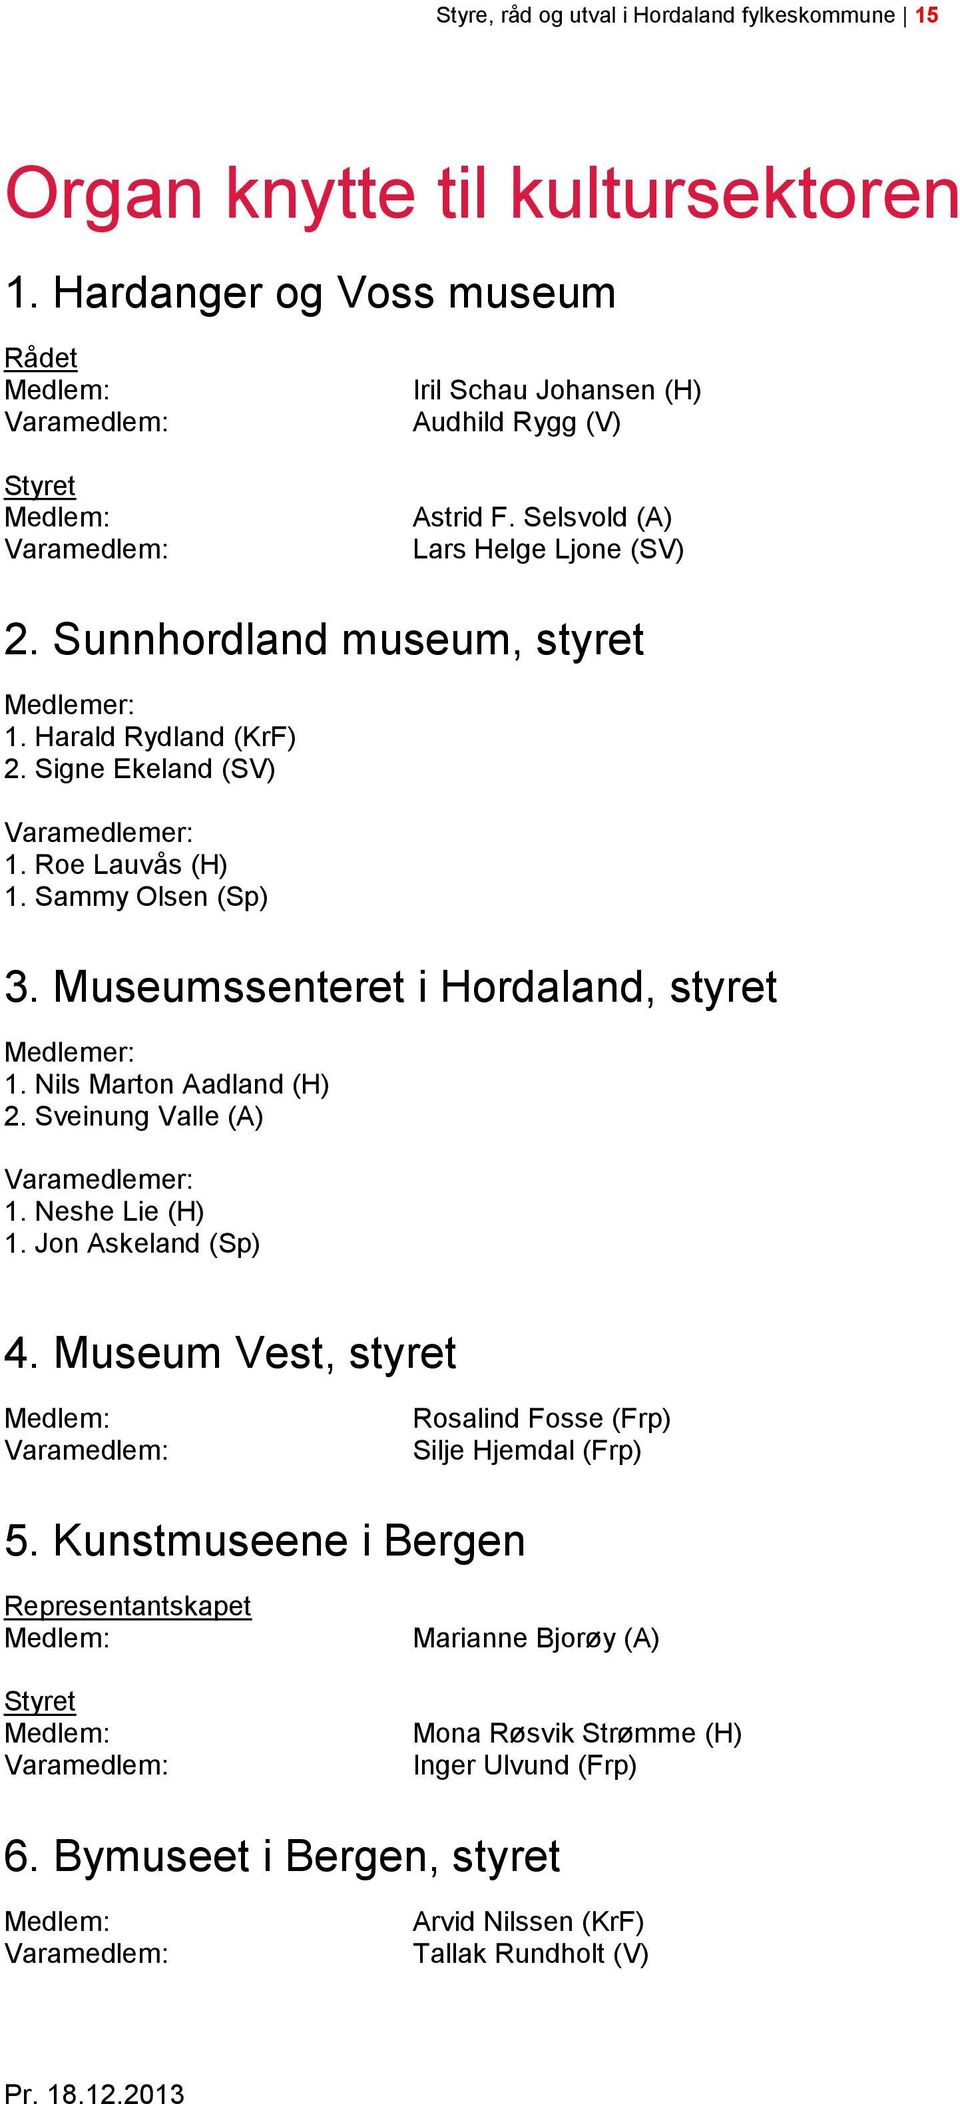 Museumssenteret i Hordaland, styret 1. Nils Marton Aadland (H) 2. Sveinung Valle (A) 1. Neshe Lie (H) 1. Jon Askeland (Sp) 4.